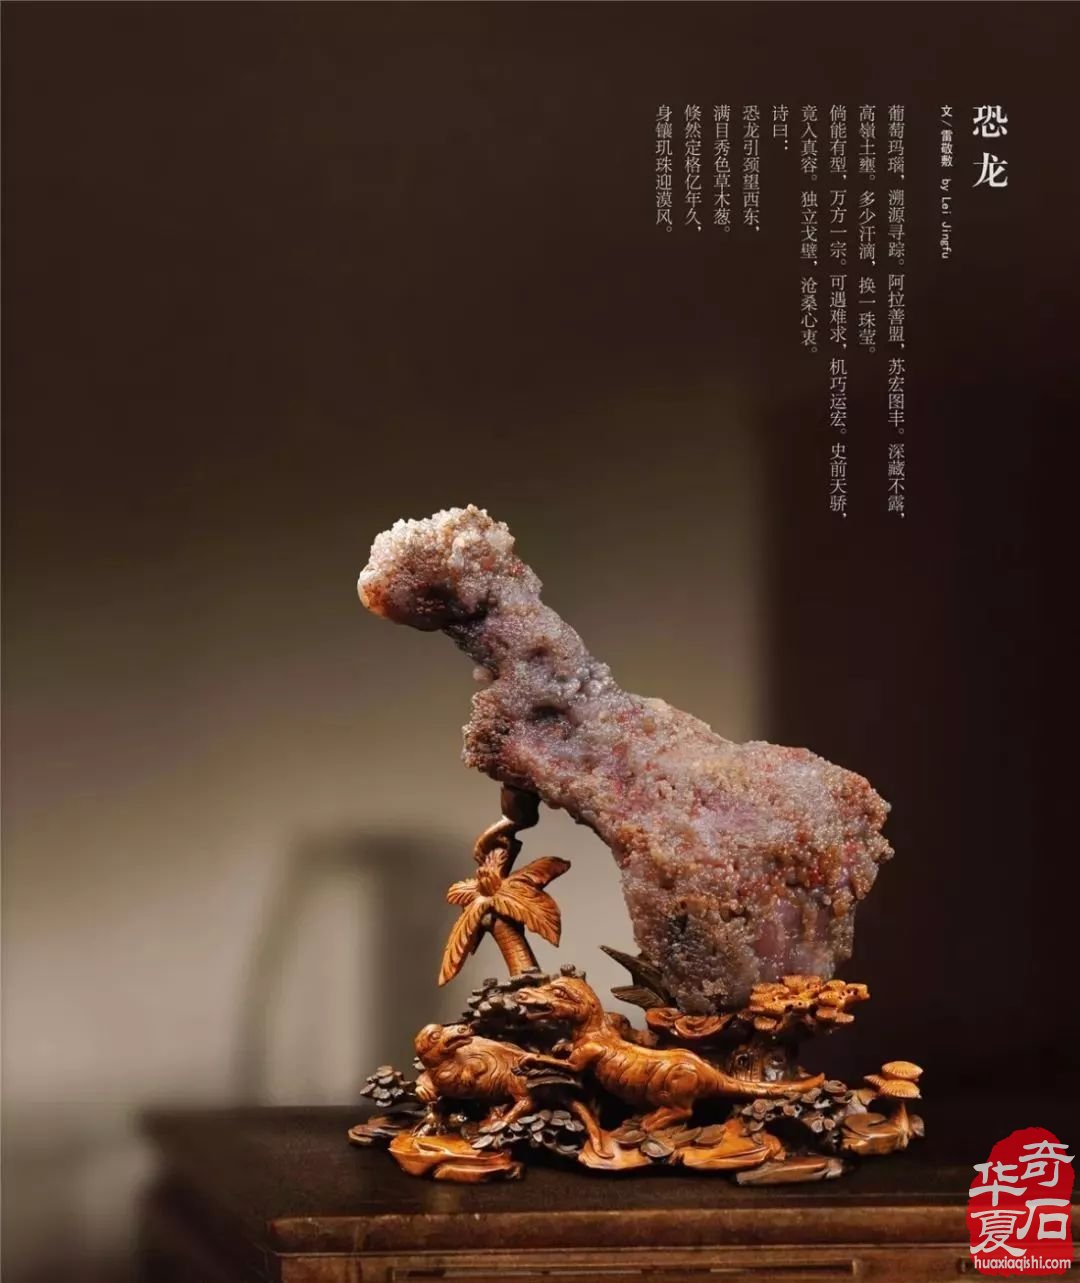 中国·银川赏石非遗文化旅游博览会欢迎您!